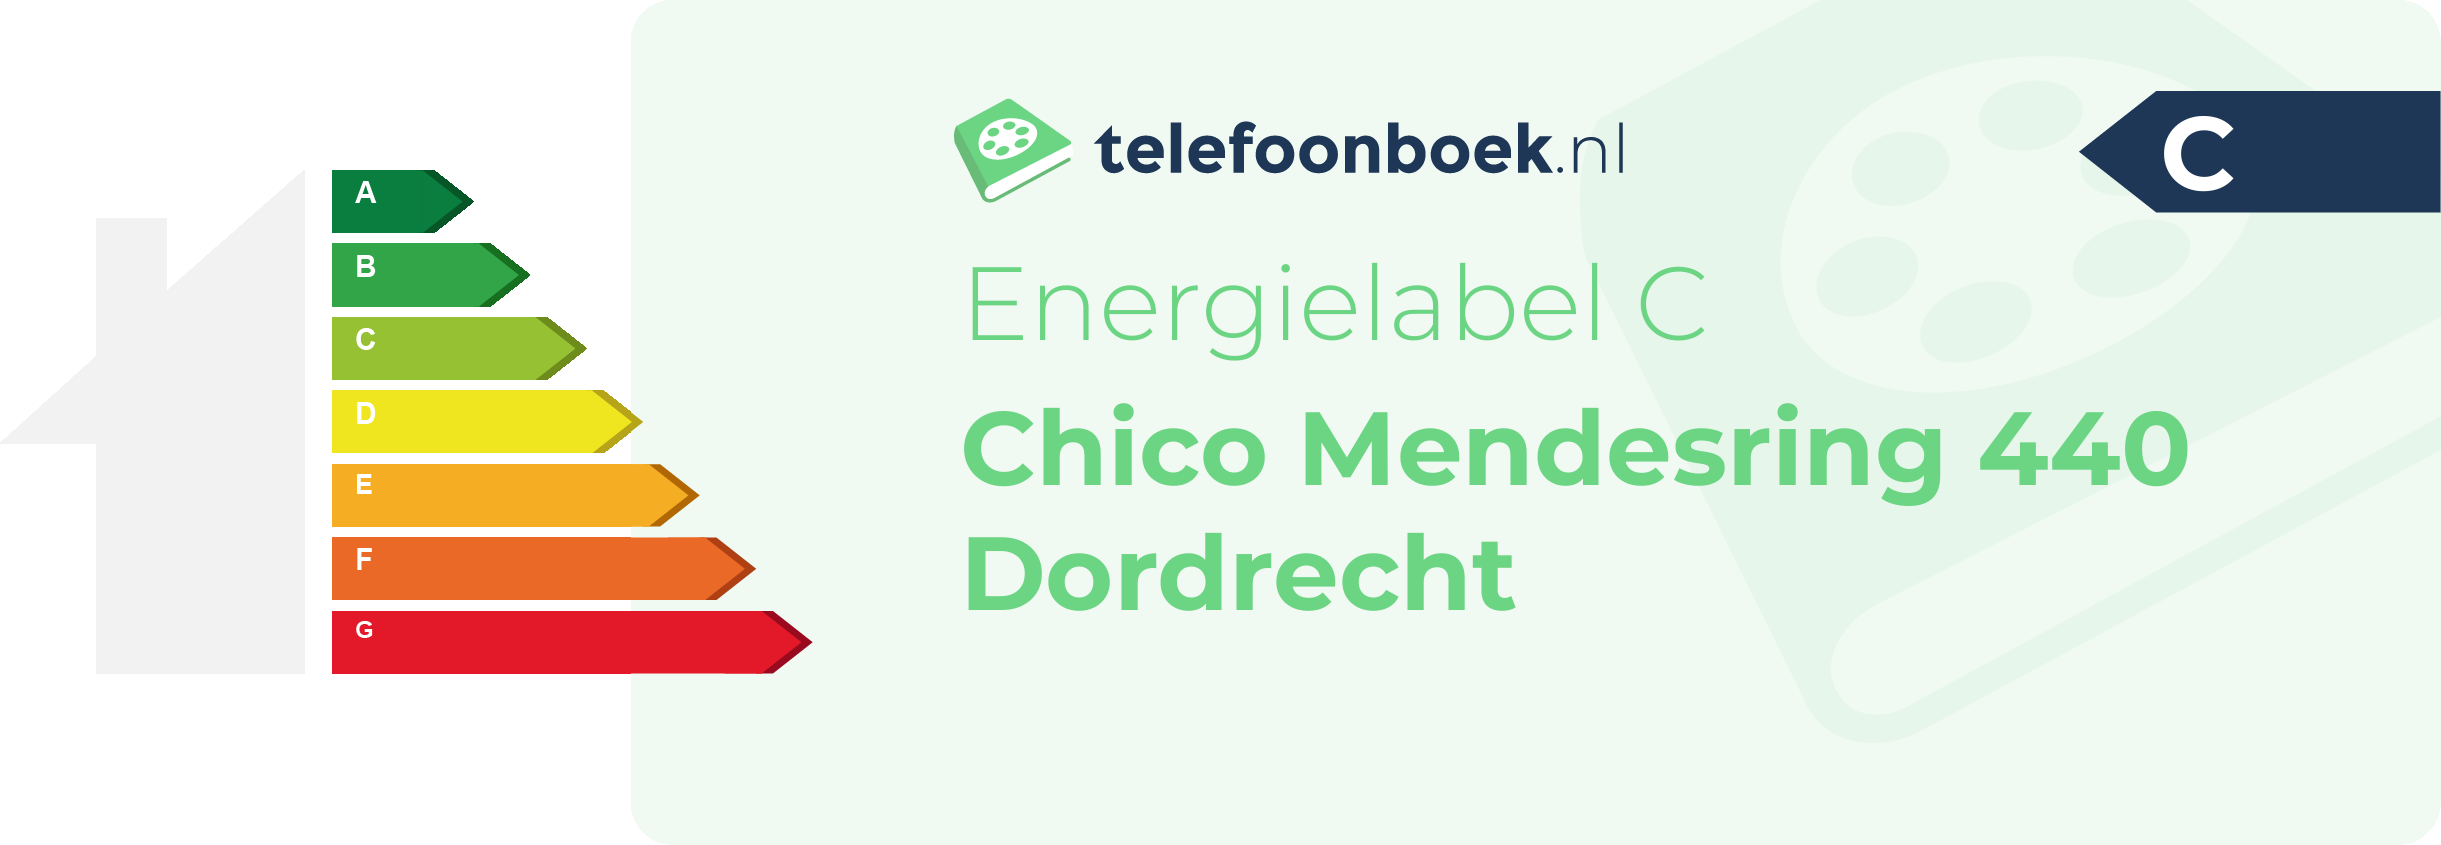 Energielabel Chico Mendesring 440 Dordrecht